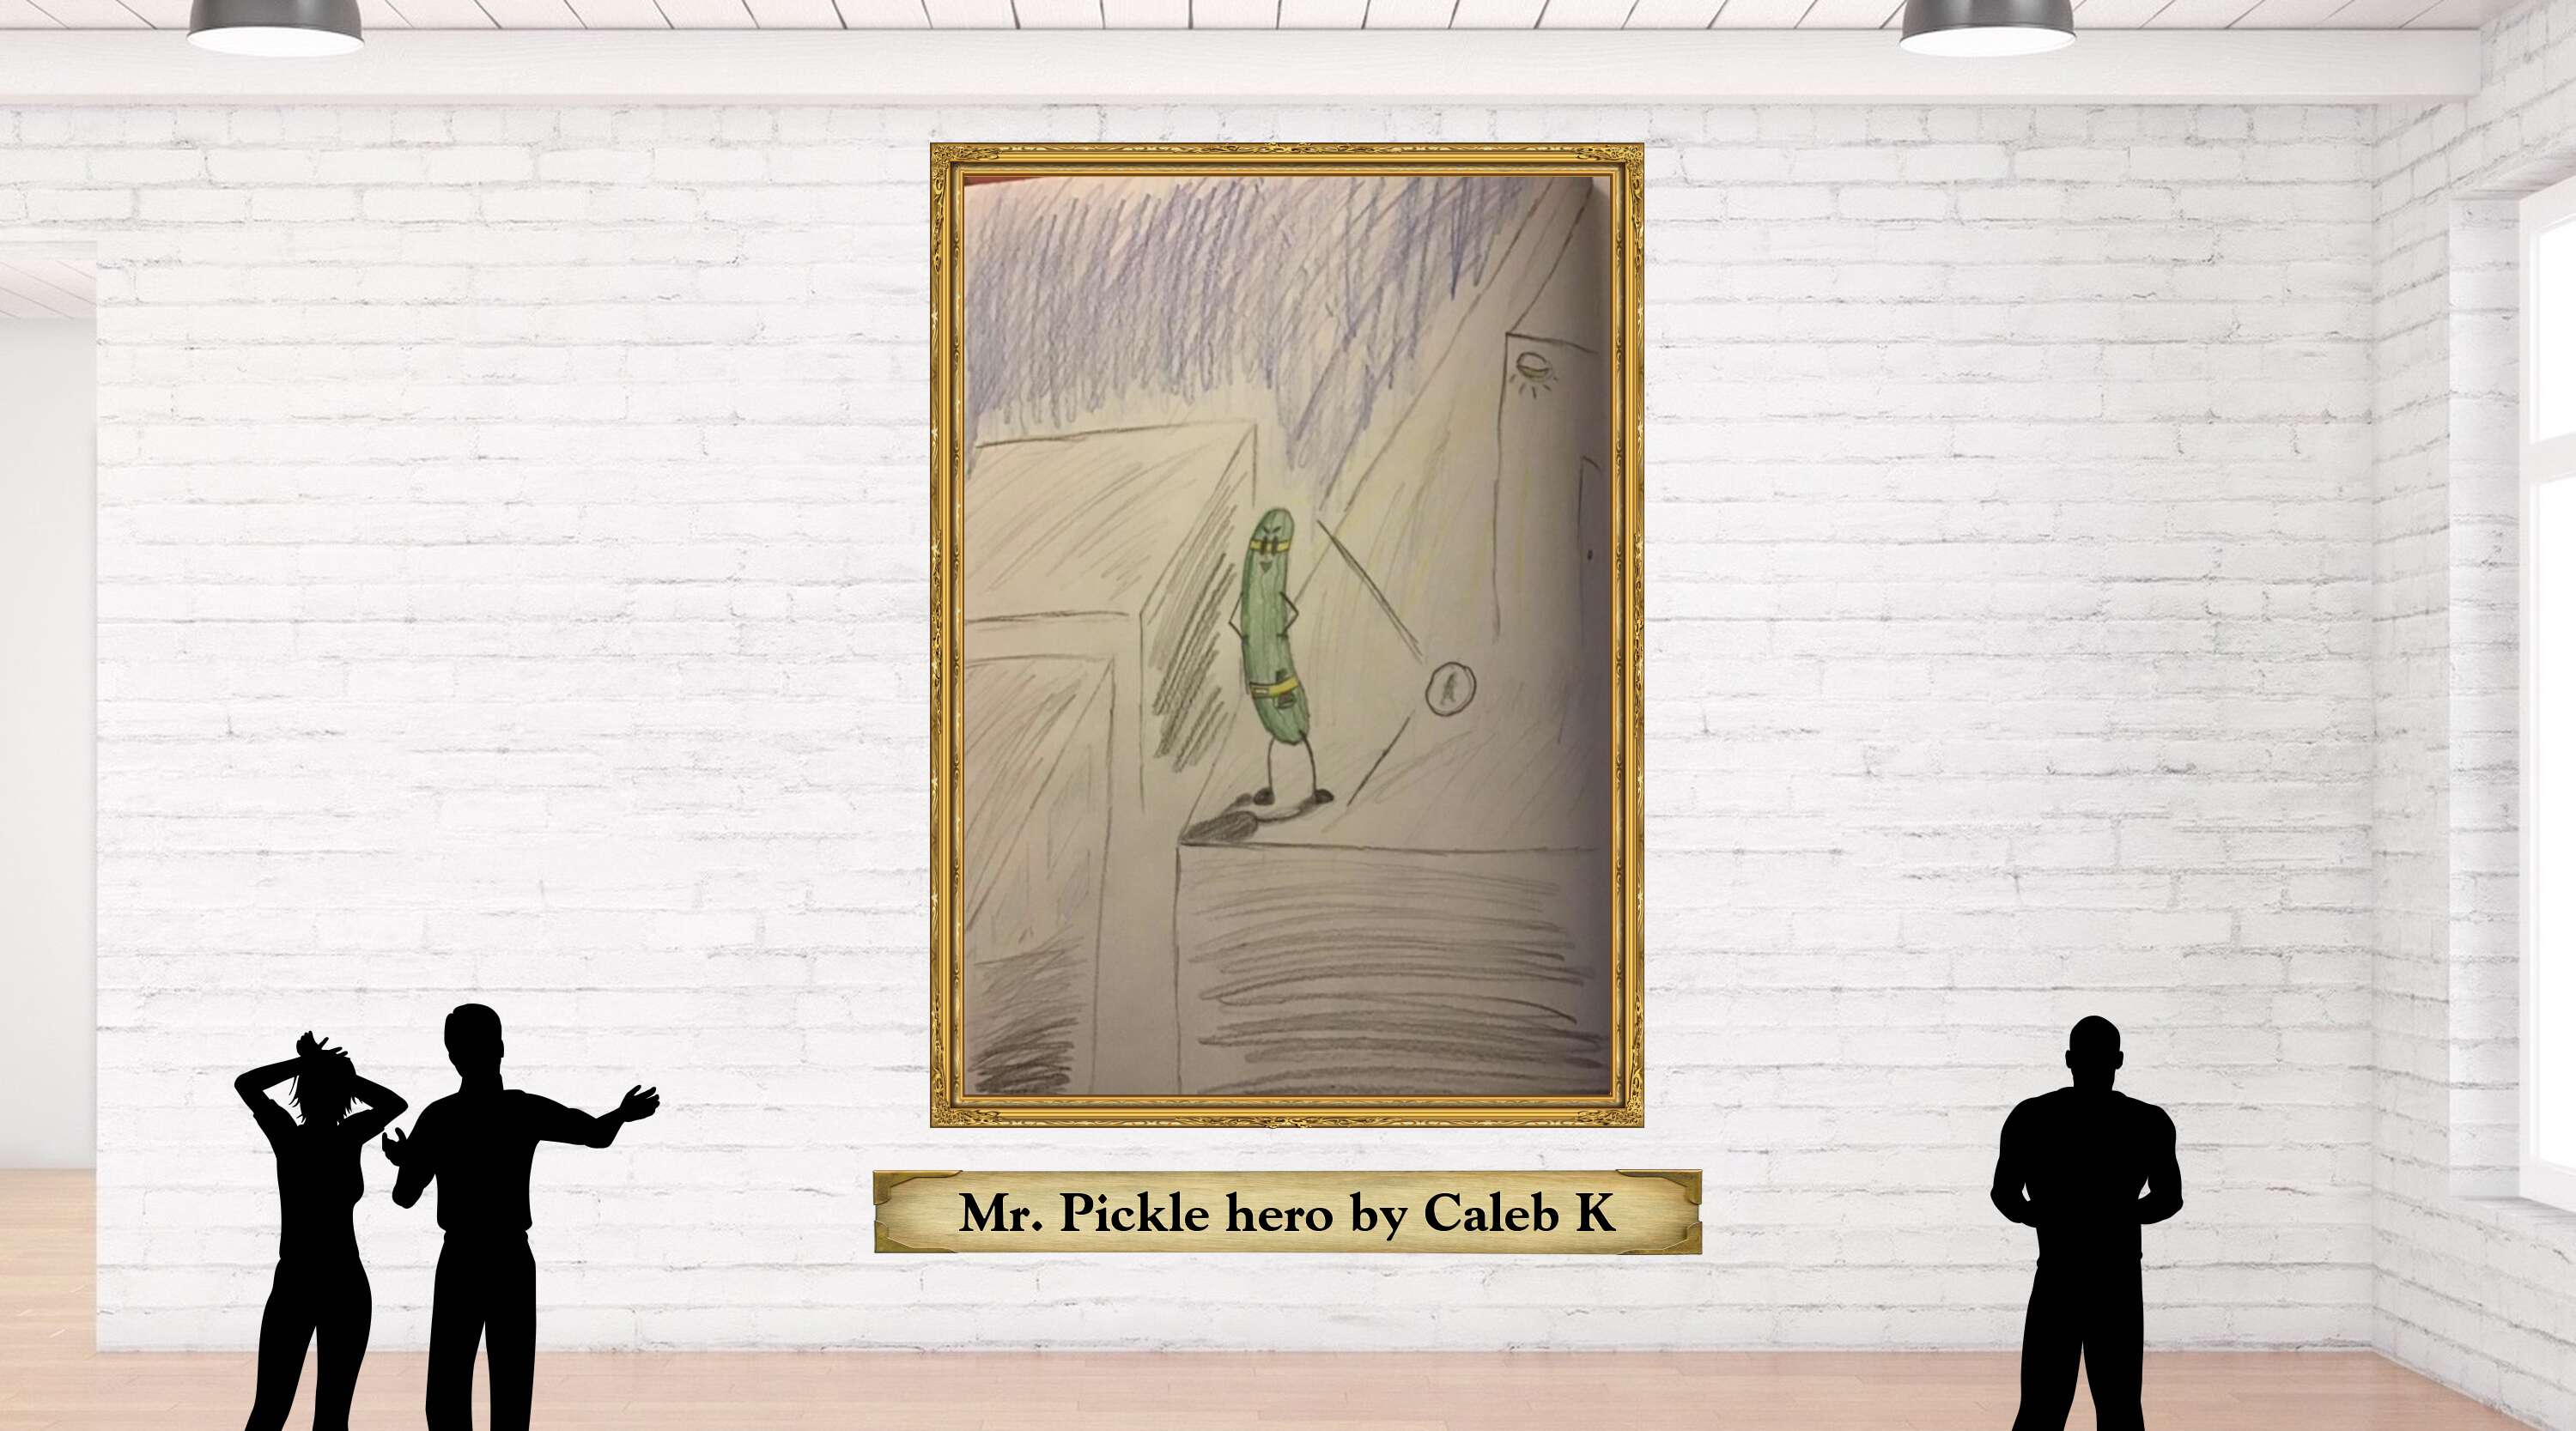 Mr. Pickle hero by Caleb K